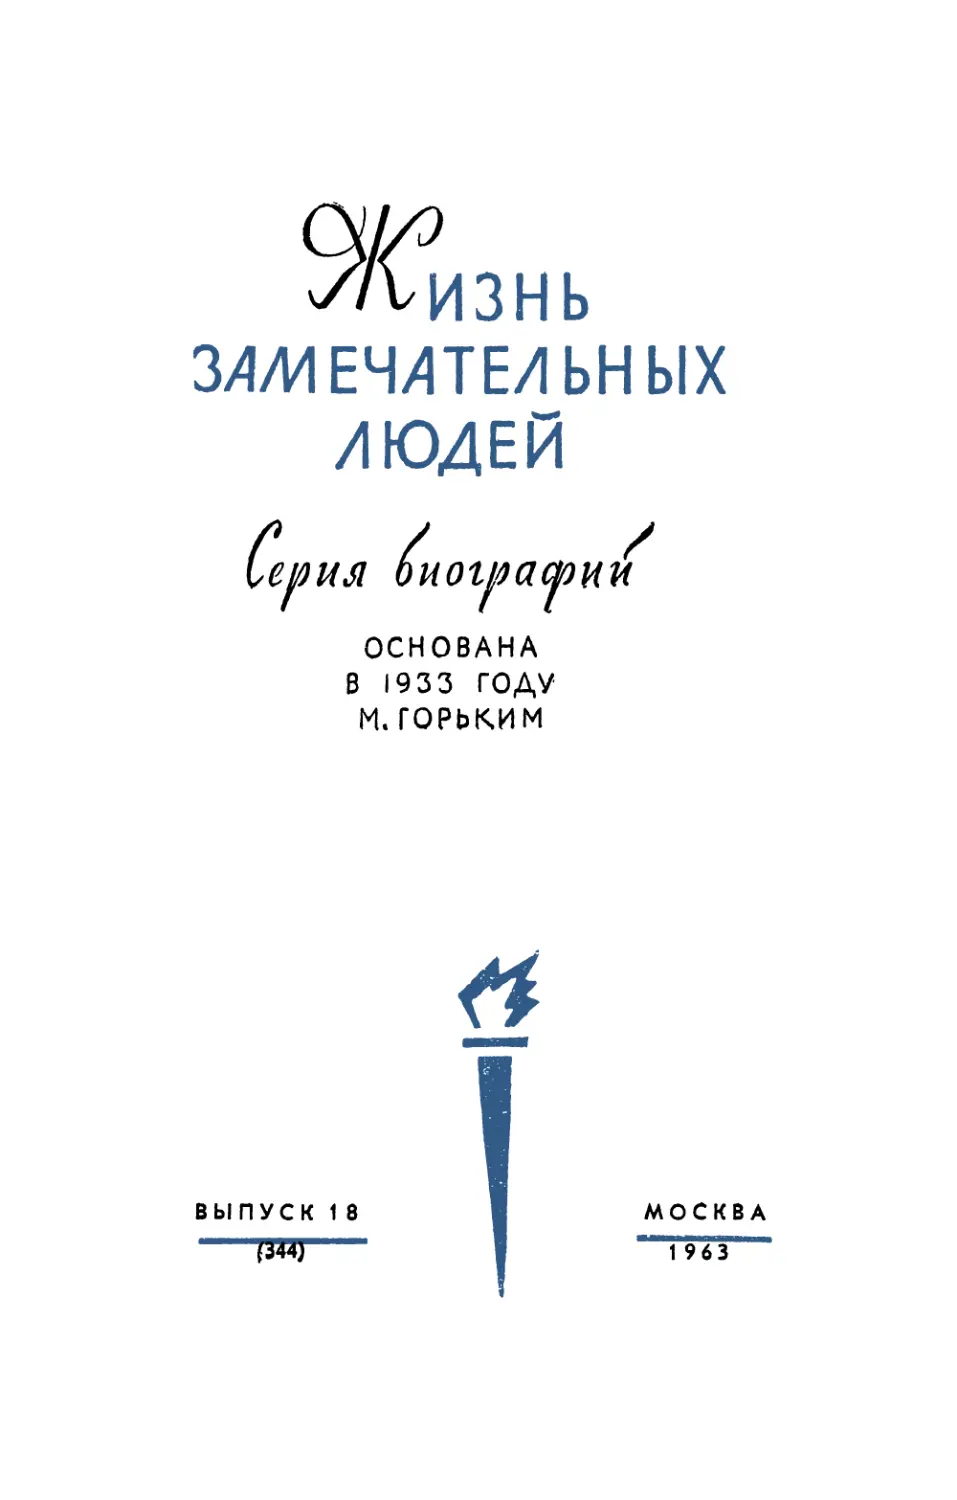 Арлазоров М.С. Циолковский - 2-е изд. - 1963